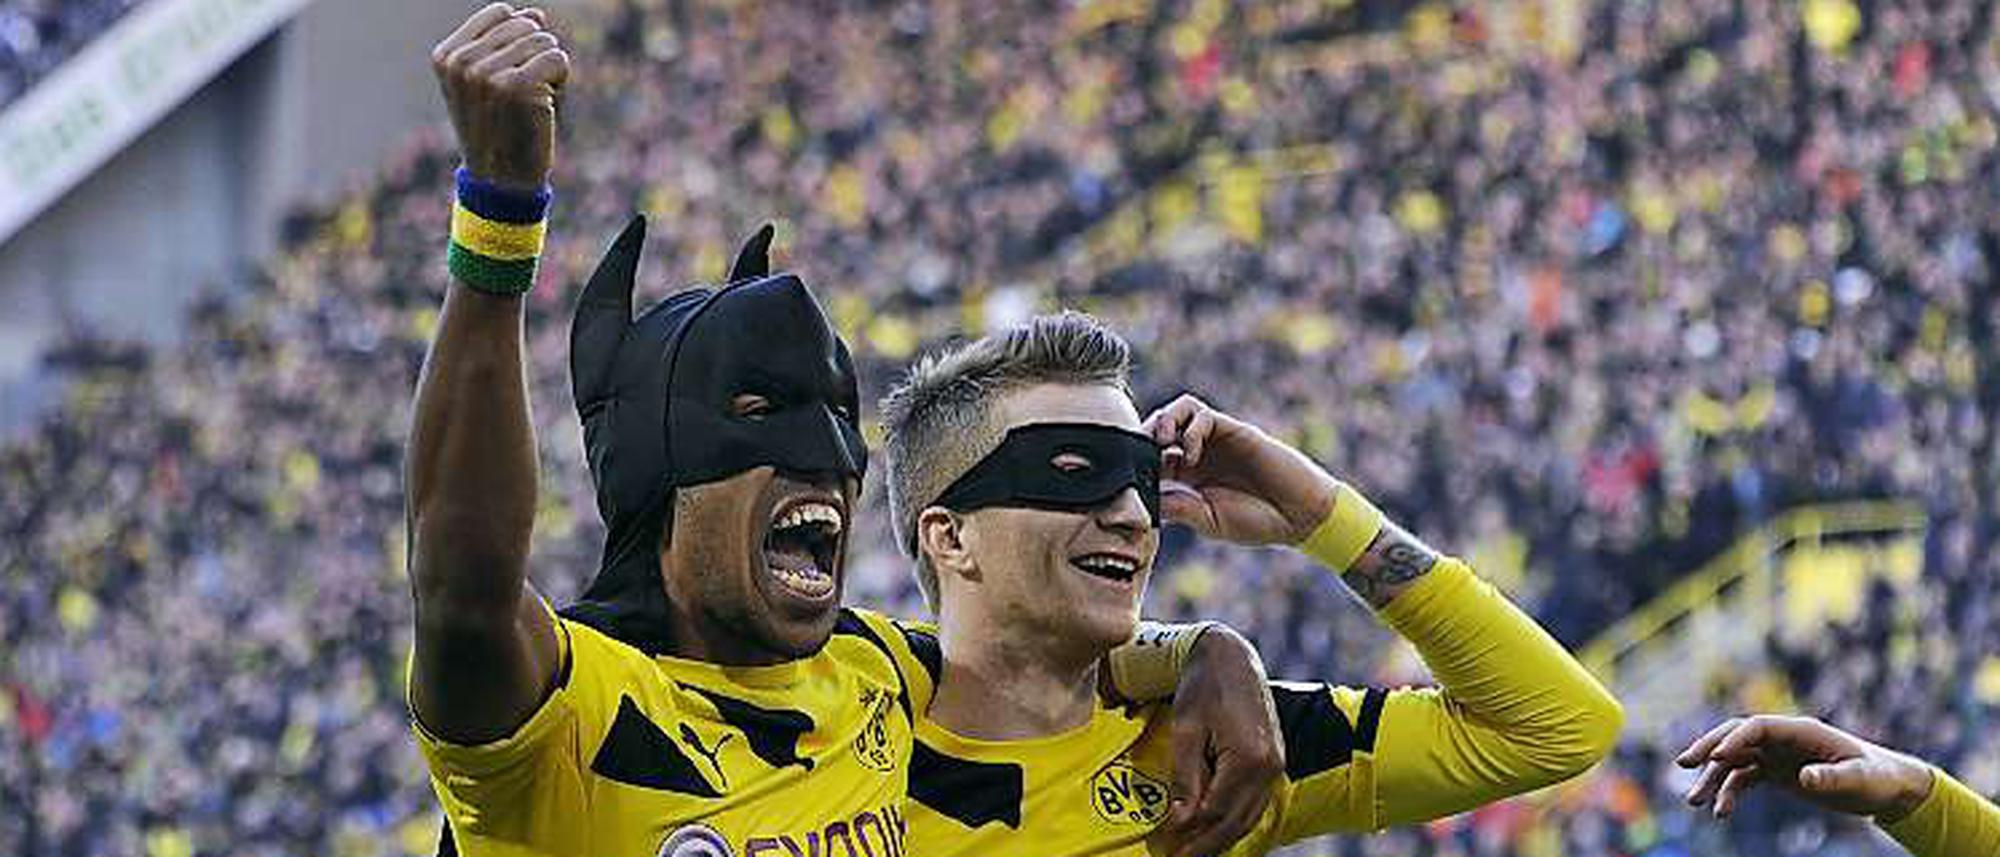 Unser Blog zum Bundesliga-Wochenende: Batman-und-Robin-Jubel: Welche Strafe  ist angemessen?